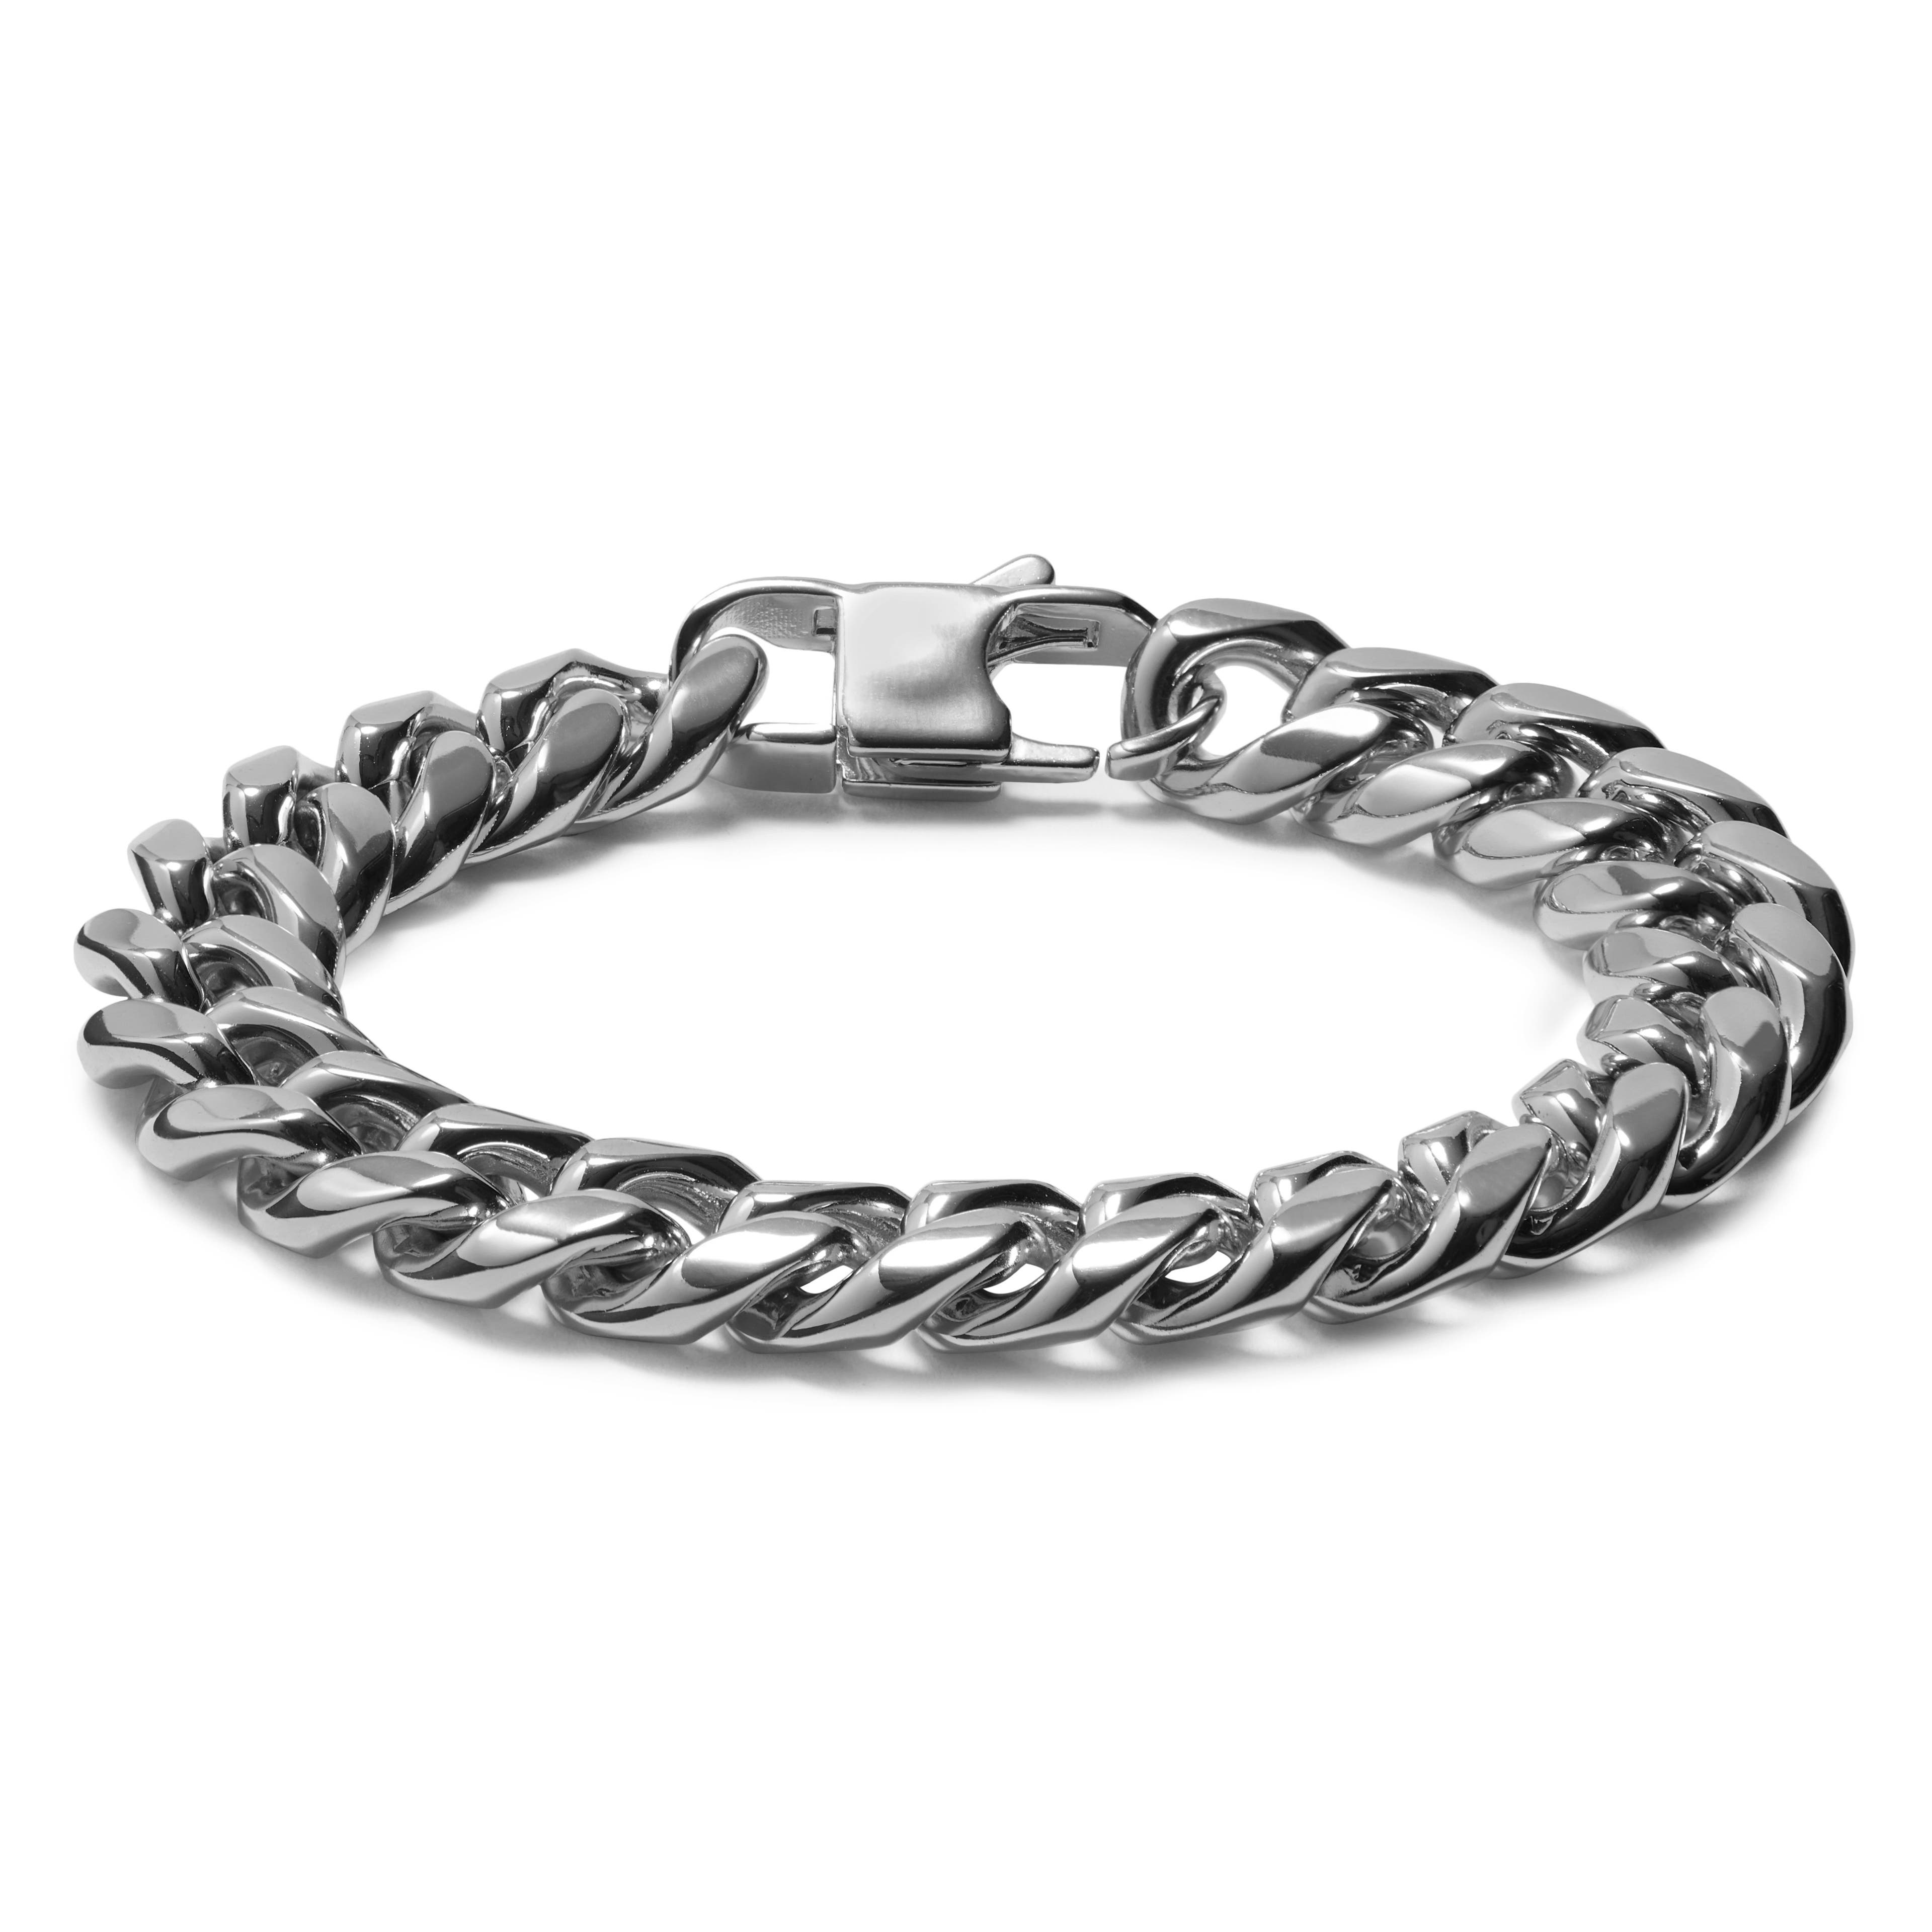 12 mm Silver-Tone Steel Chain Bracelet